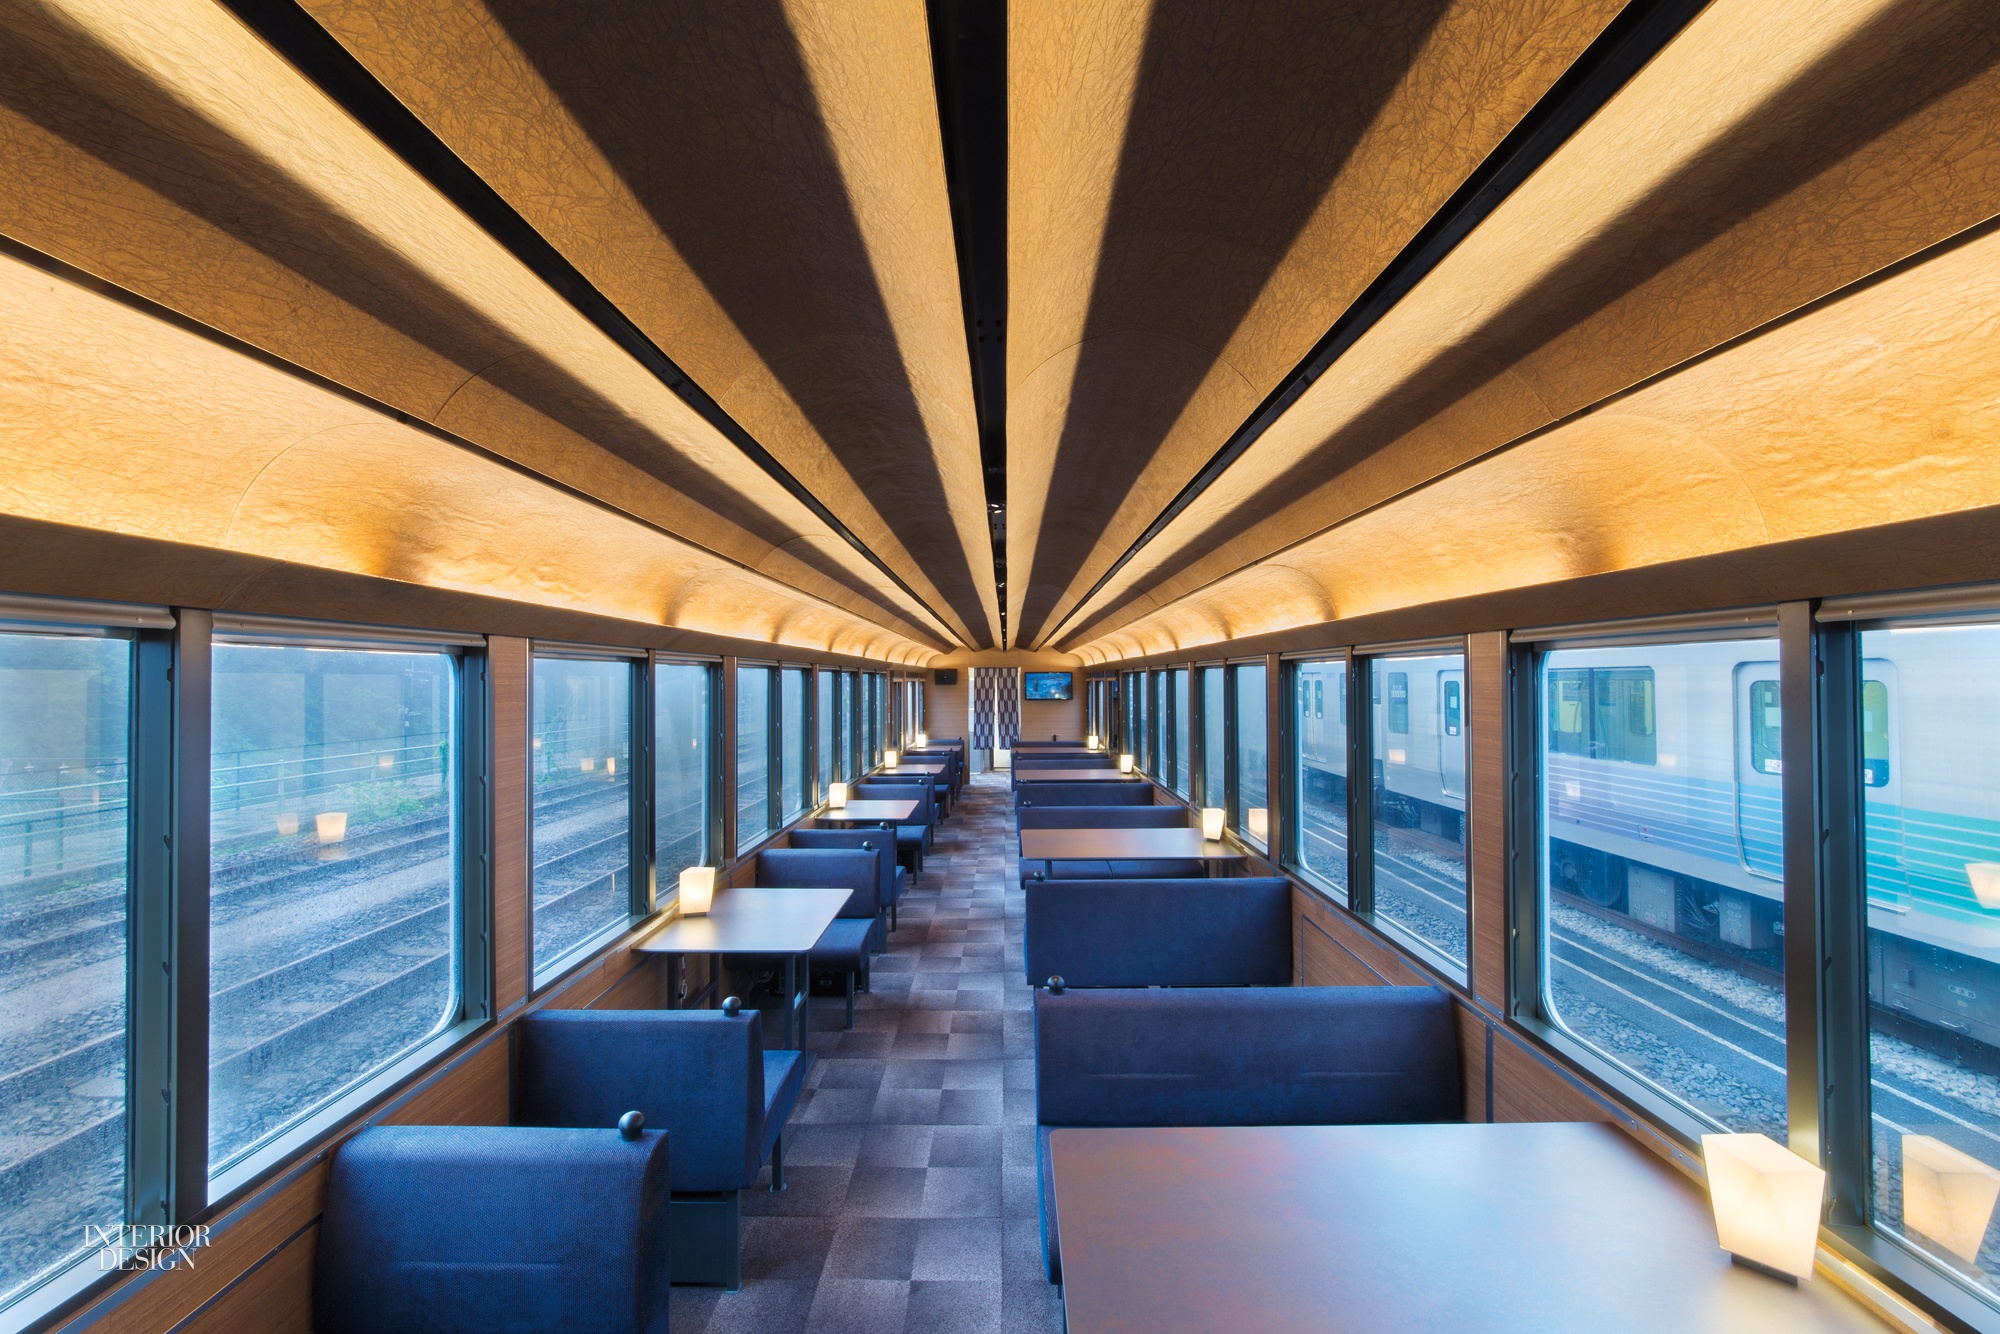 Le train restaurant 52 sets of Happiness par Design Maroc